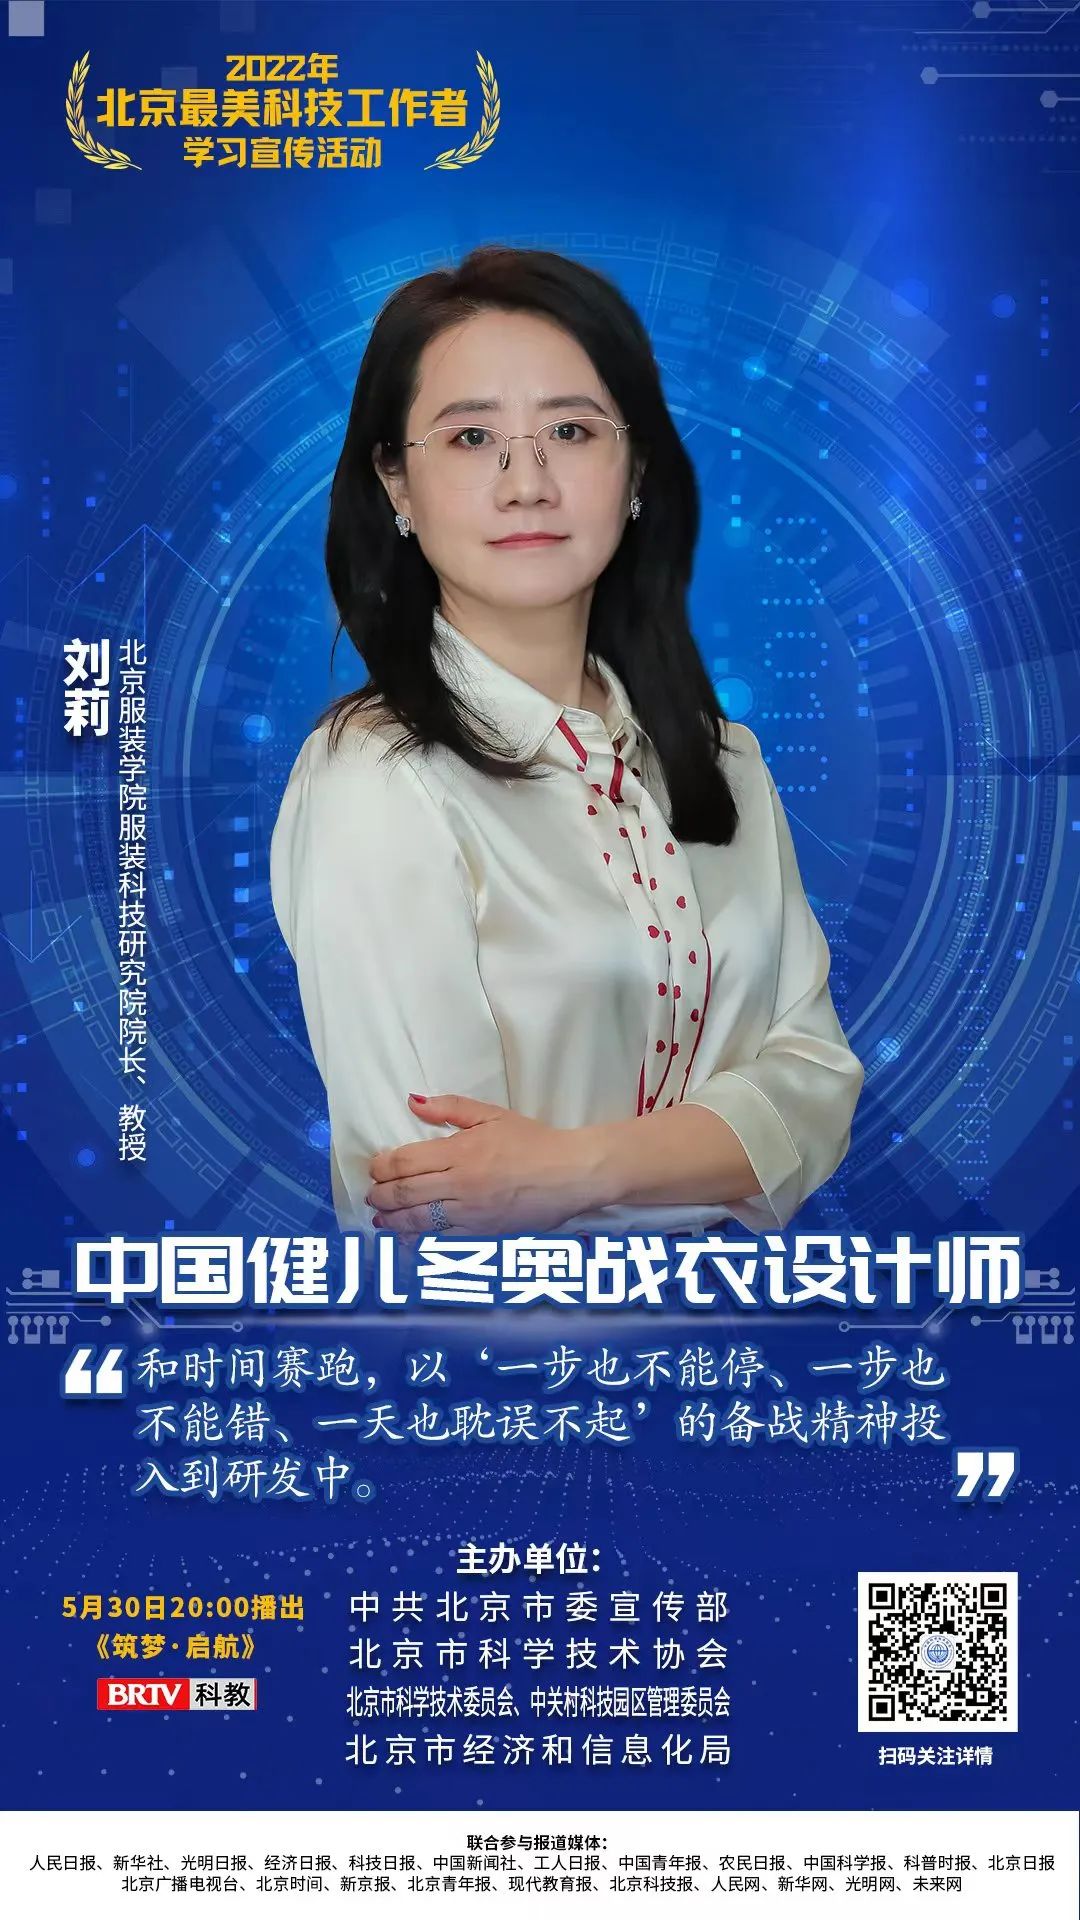 九州bt版官网科技工作者日|北京“最美科技工作者”刘莉带您了解竞技体育中的纺织科学